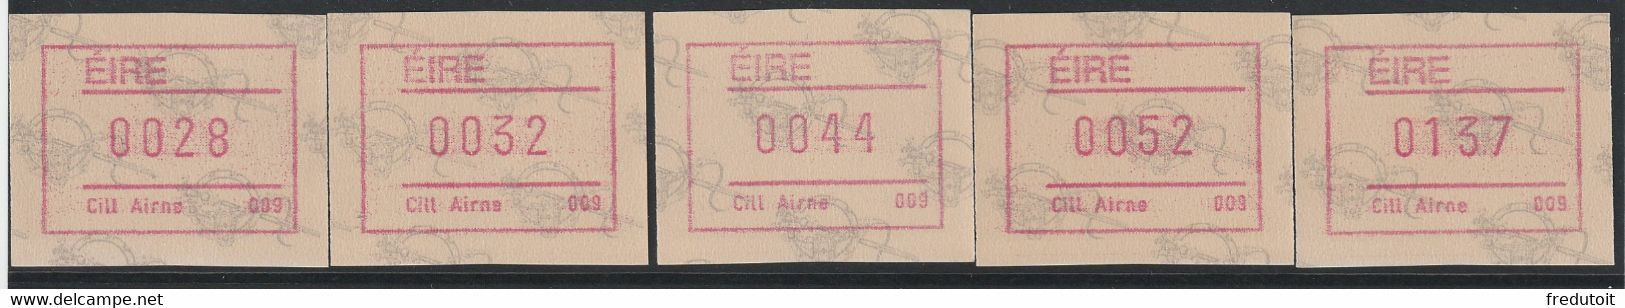 IRLANDE - Timbres Distributeurs / FRAMA  ATM - N°4** (1992) Cill Airne 009 - Vignettes D'affranchissement (Frama)